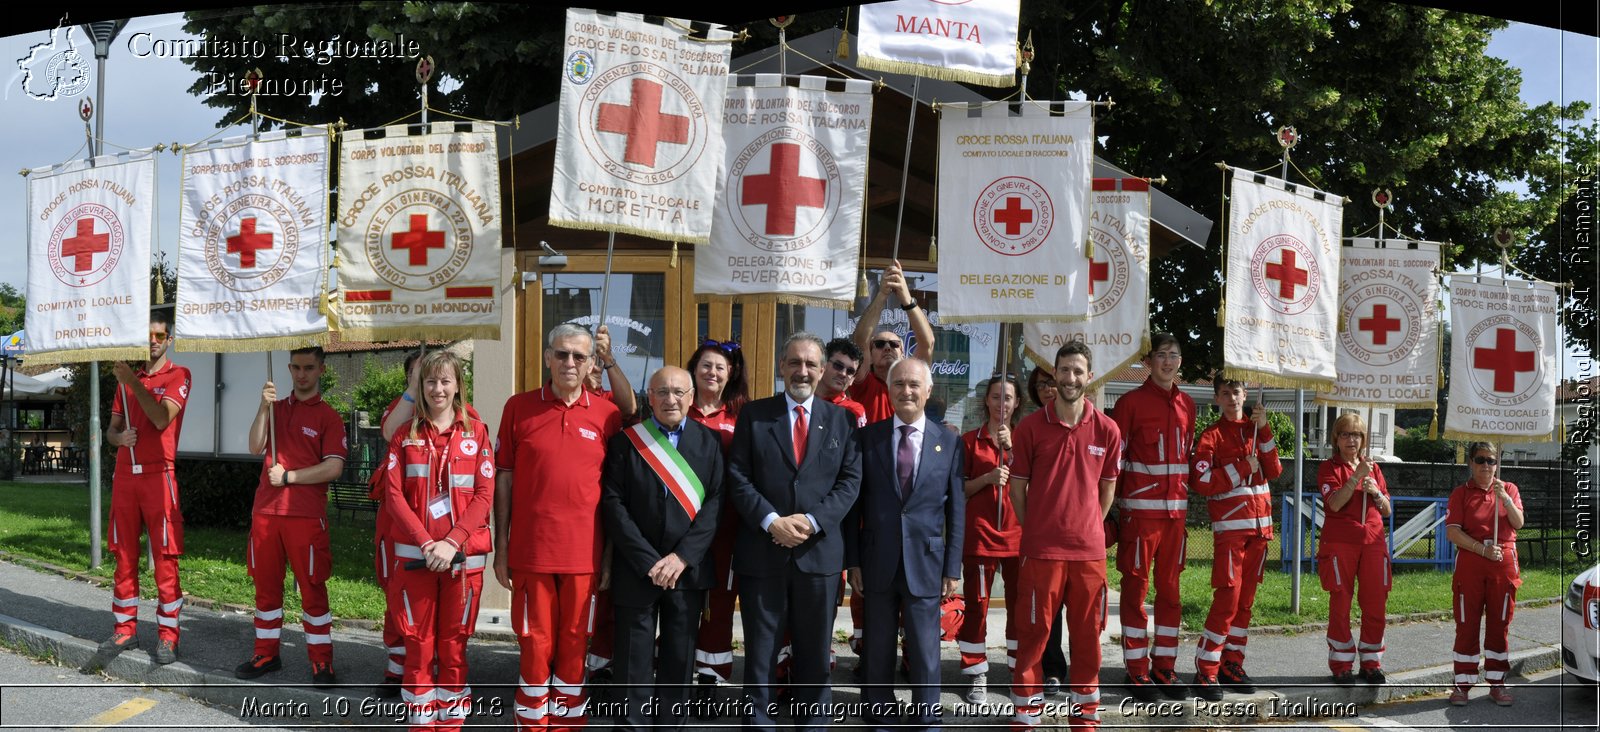 Manta 10 Giugno 2018 - 15 Anni di attivit e inaugurazione nuova Sede - Croce Rossa Italiana- Comitato Regionale del Piemonte